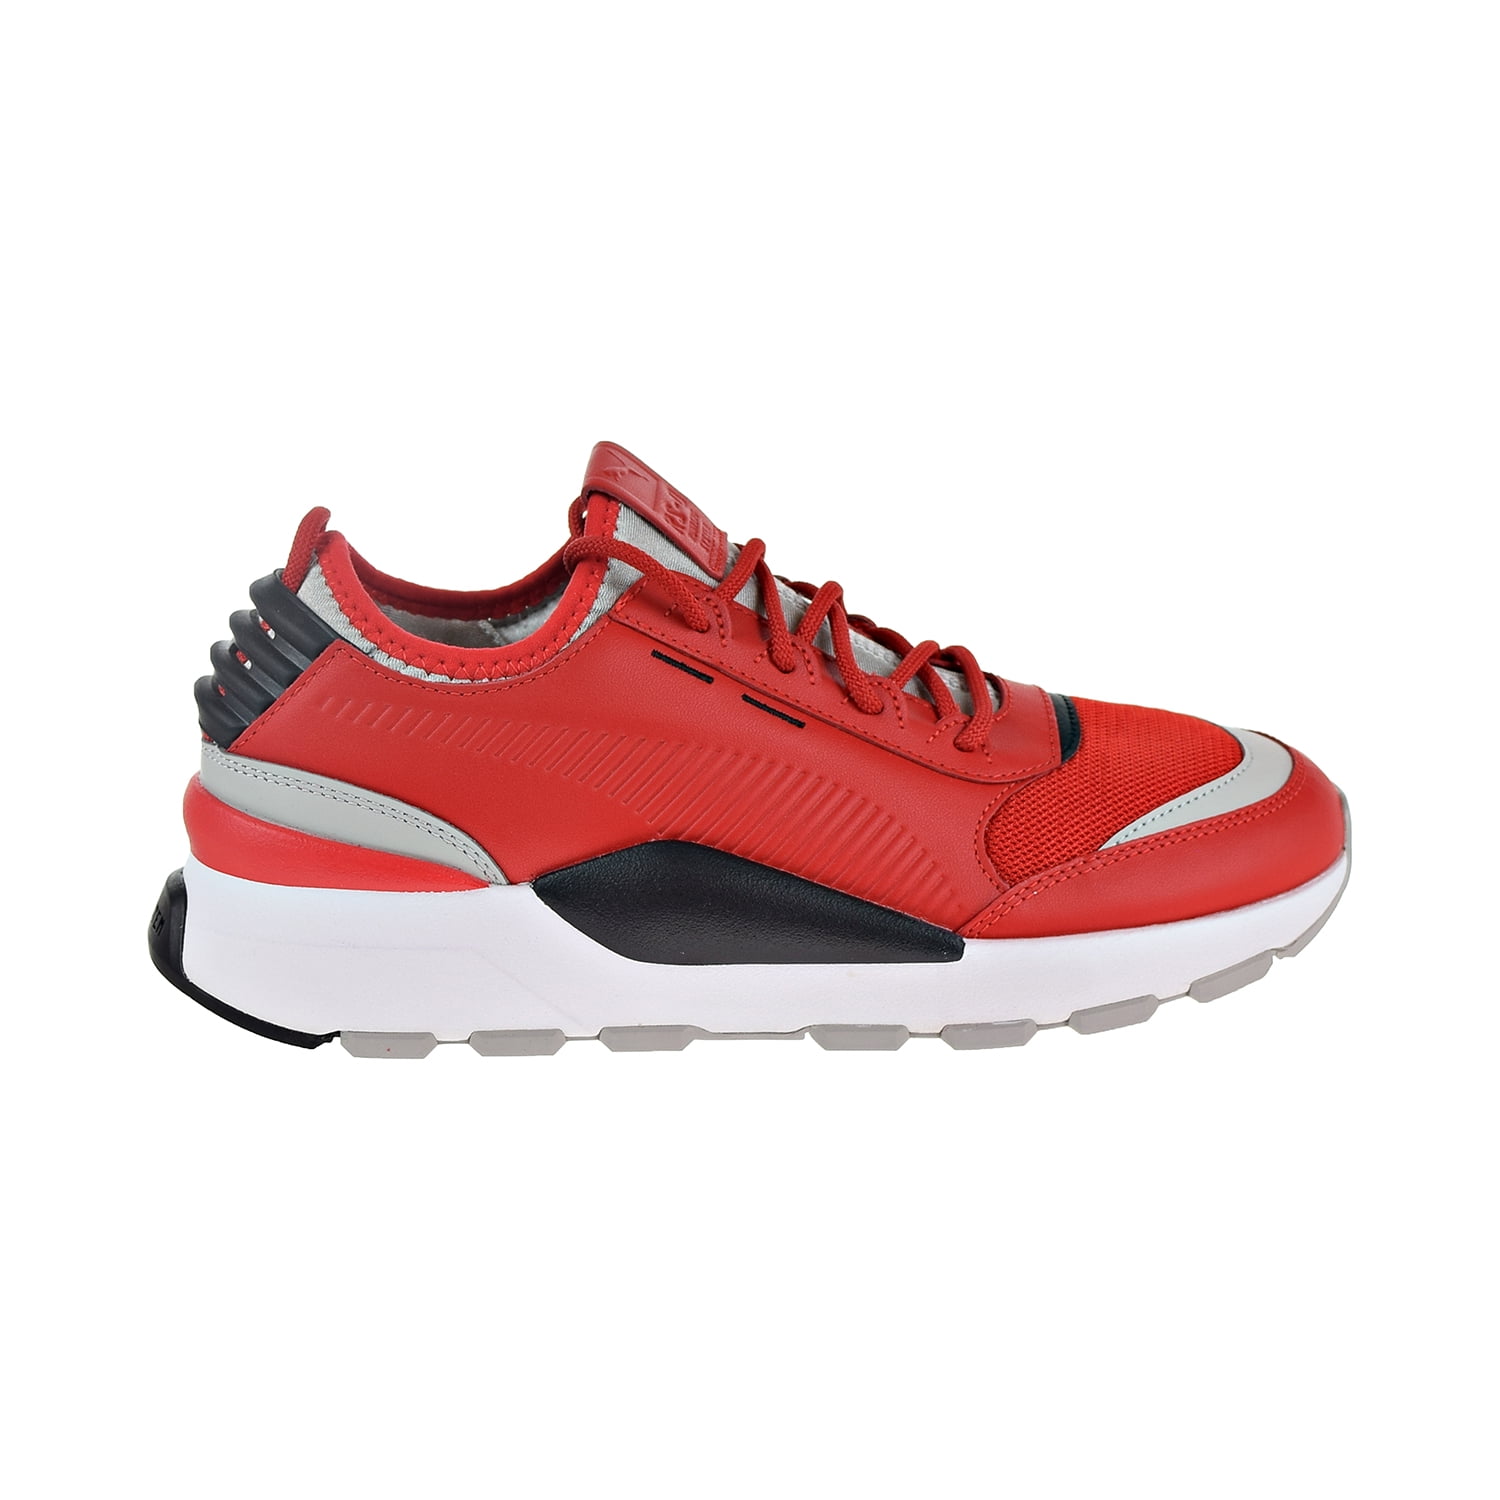 RS-0 Sound Men's Shoes High Risk Red/Grey/Violet/Black -